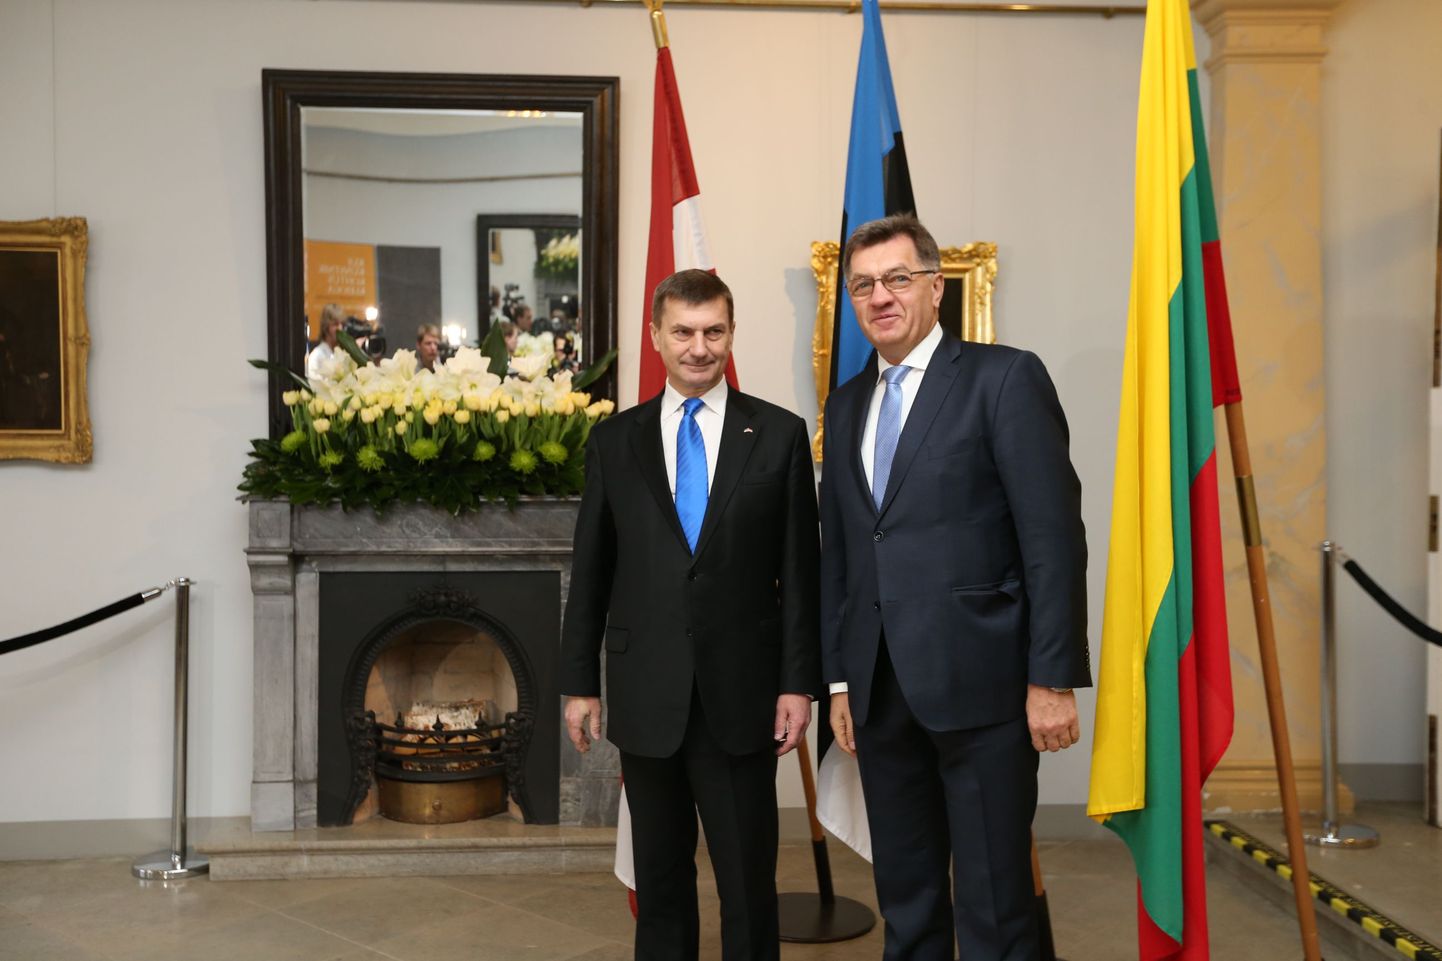 Tallinnas Kadrioru kunstumuuseumis algas Balti riikide peaministrite kohtumine. Peaminister Andrus Ansip ja Leedu valitsusjuht Algirdas Butkevicius.